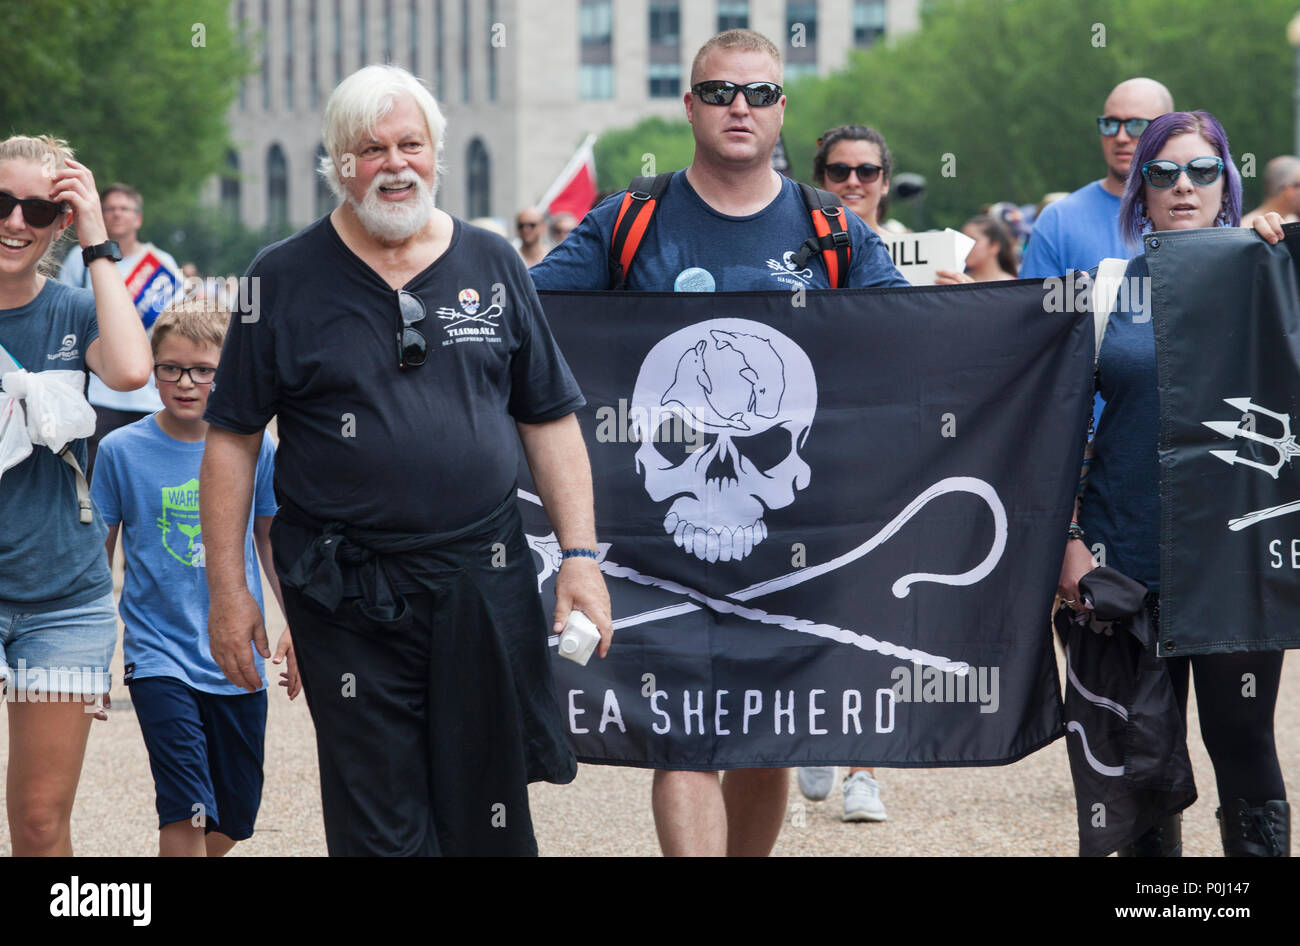 Watson, a sinistra, fondatore di Sea Shepherd, marches con i sostenitori sulla marcia per l'Oceano a Washington, D.C., 9 giugno 2018. La marcia inaugurale per l'Oceano ha chiamato l'attenzione alle questioni oceaniche, tra cui l'inquinamento di plastica e la pesca eccessiva in occasione di eventi nella capitale degli Stati Uniti e in tutto il territorio degli Stati Uniti. Credito: Robert Meyers/Alamy Live News Foto Stock